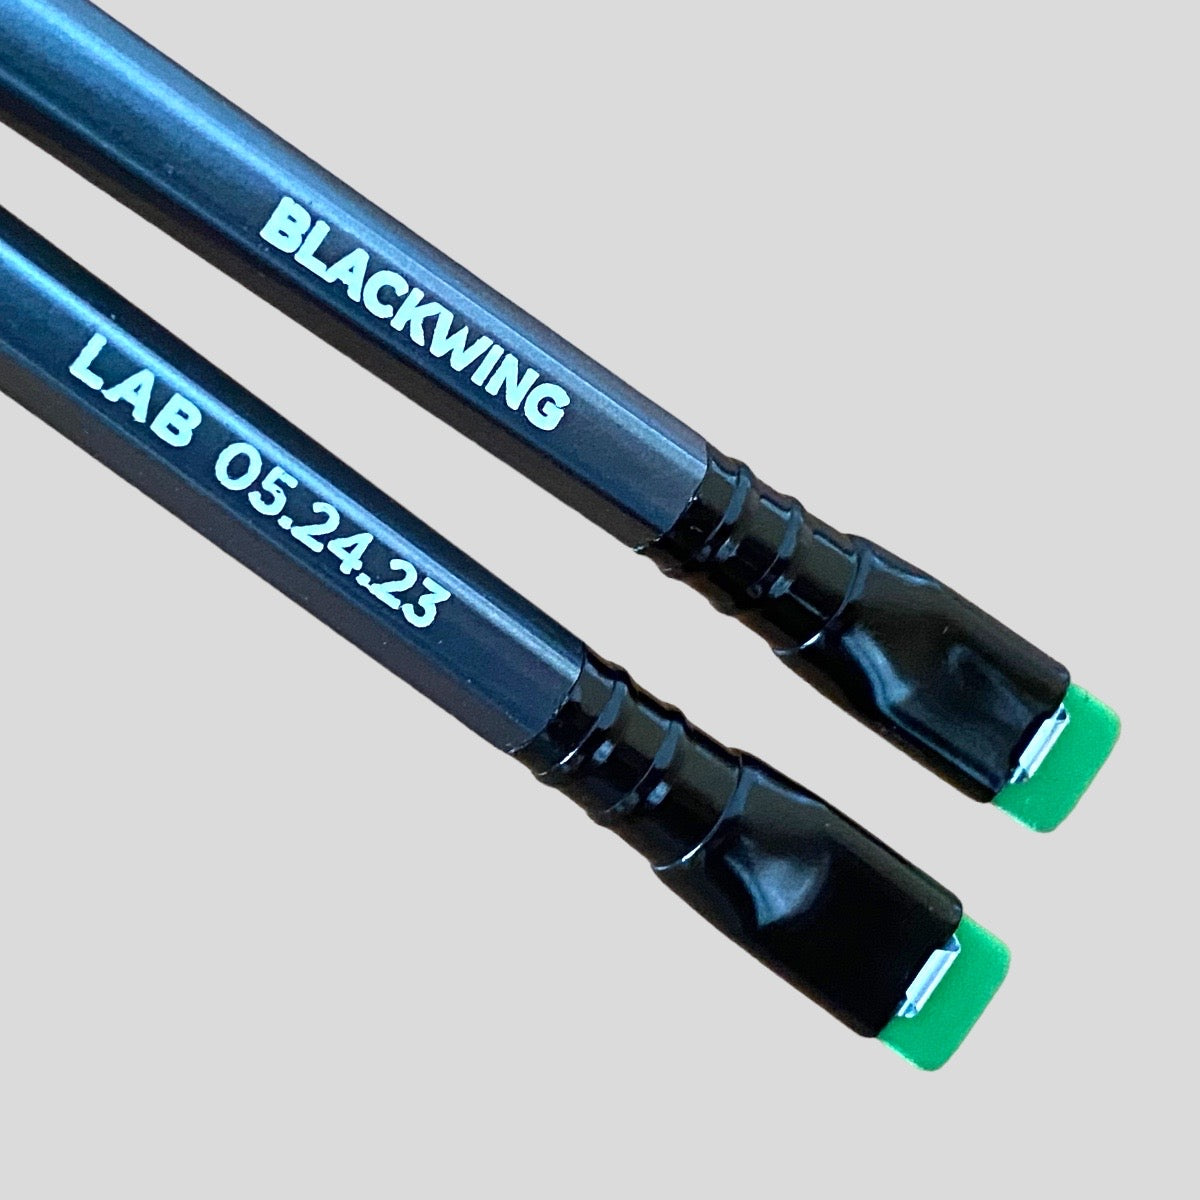 Lápiz Blackwing Lab 05.24.23. Edición Limitada. Palomino